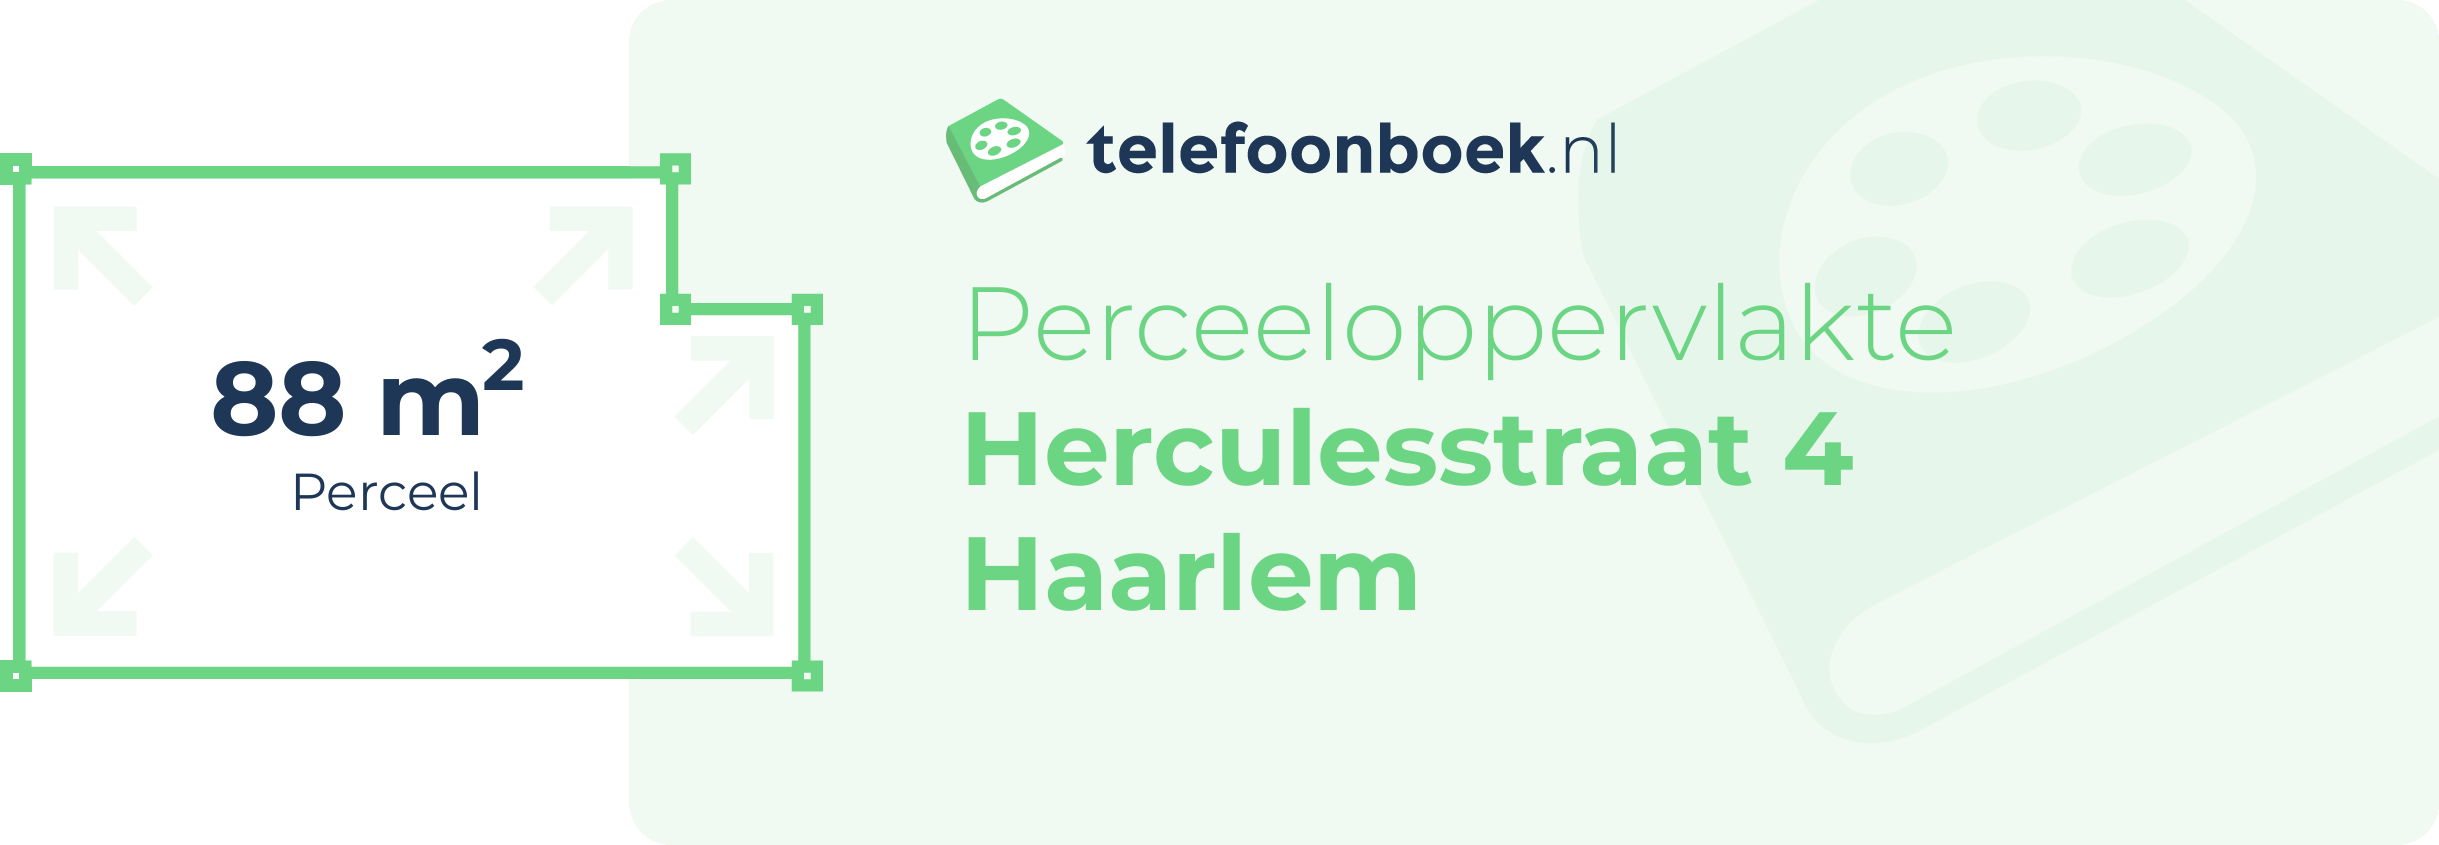 Perceeloppervlakte Herculesstraat 4 Haarlem